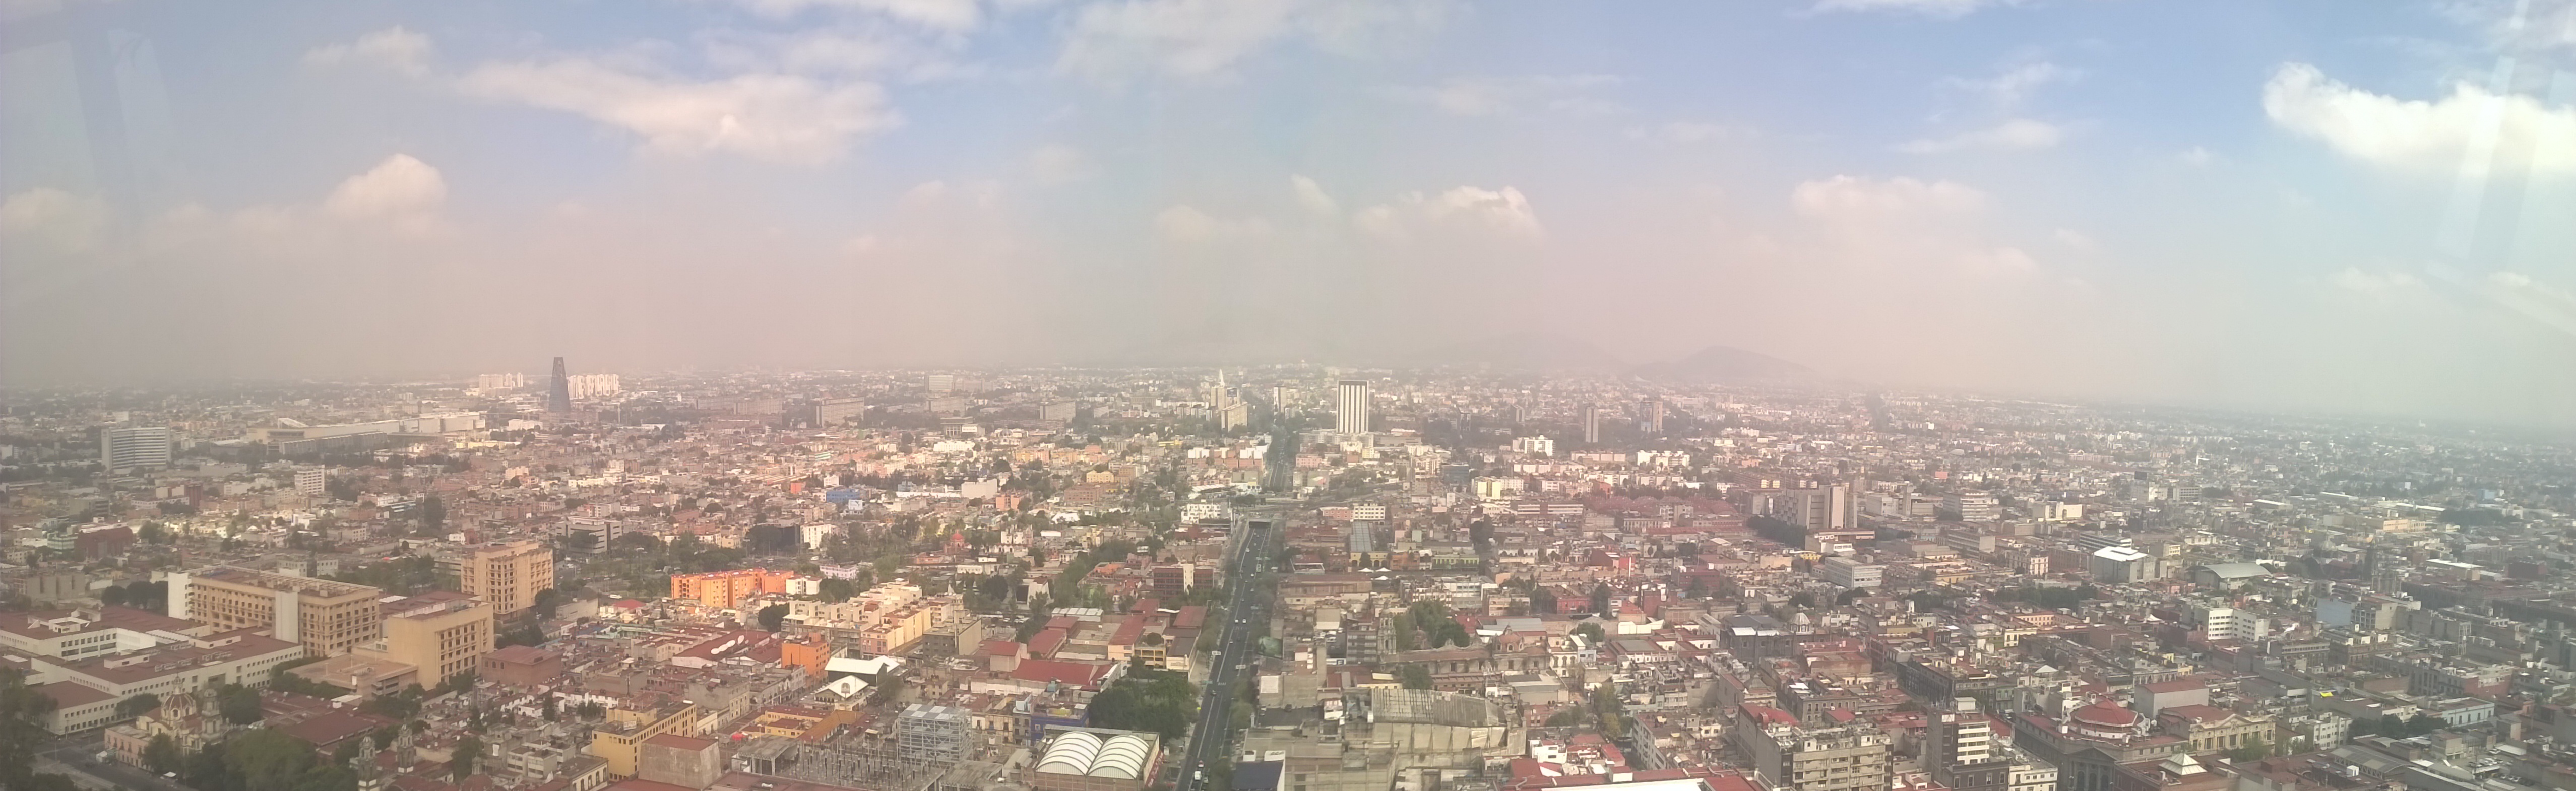 Panoramica (abbastanza inquinata) di Ciudad de Mexico dalla Torre Latinoamericana